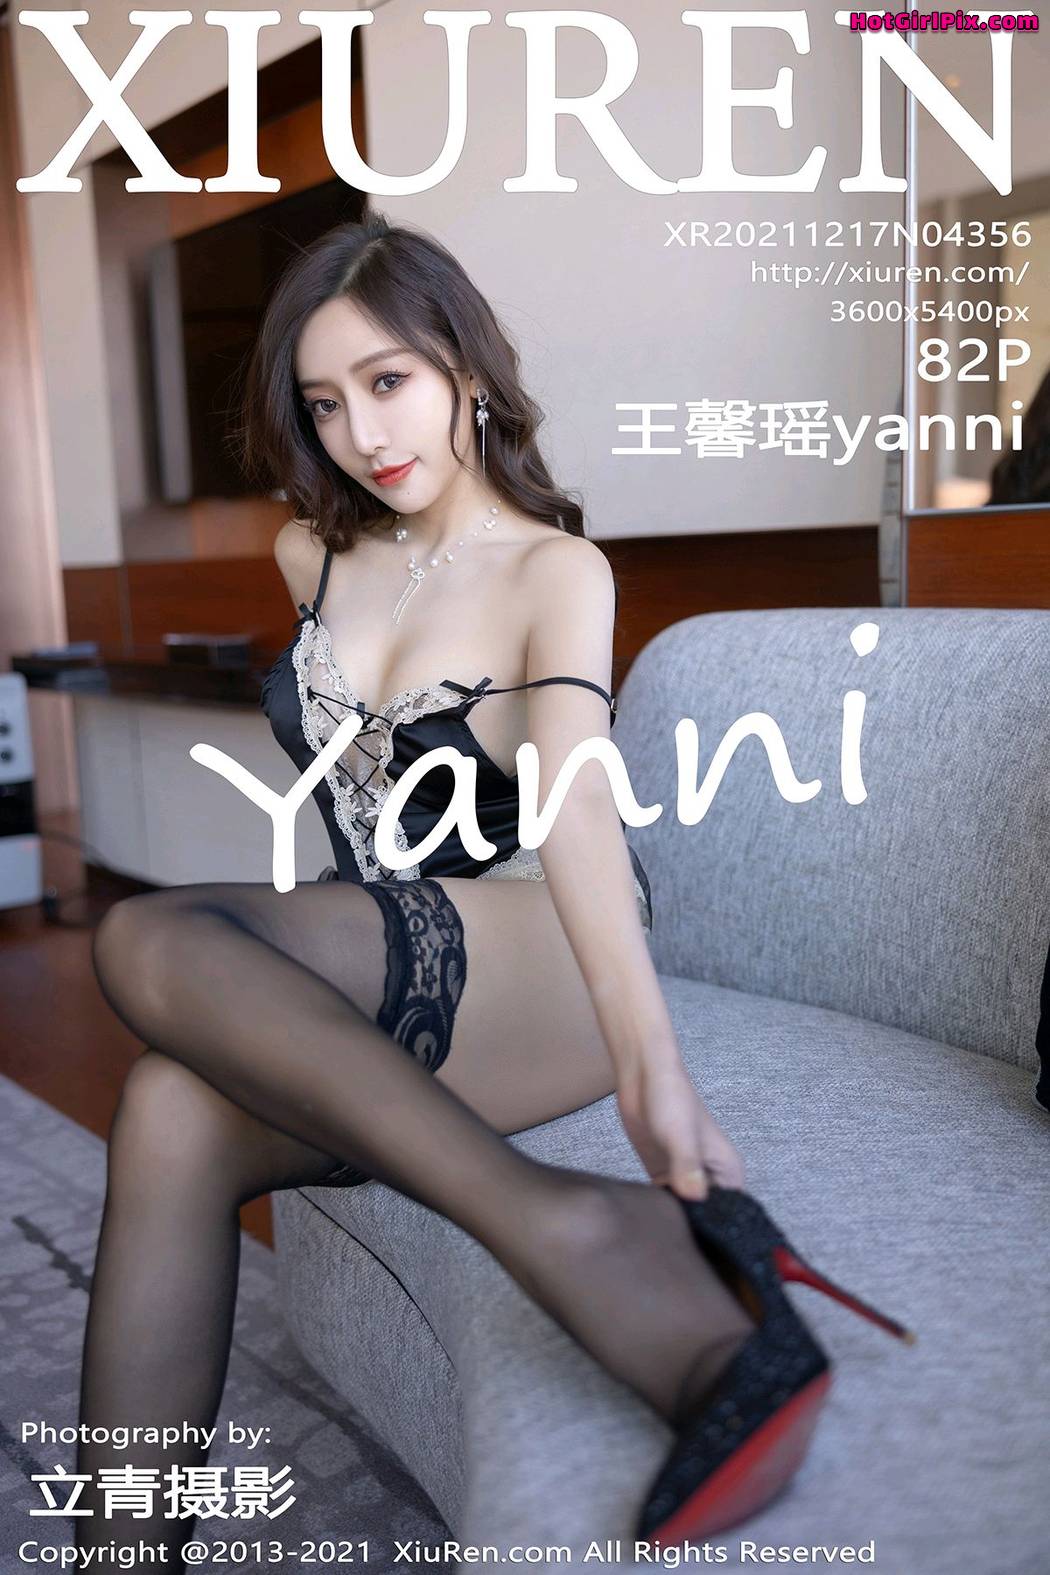 [XIUREN] No.4356 Wang Xin Yao 王馨瑶yanni Cover Photo